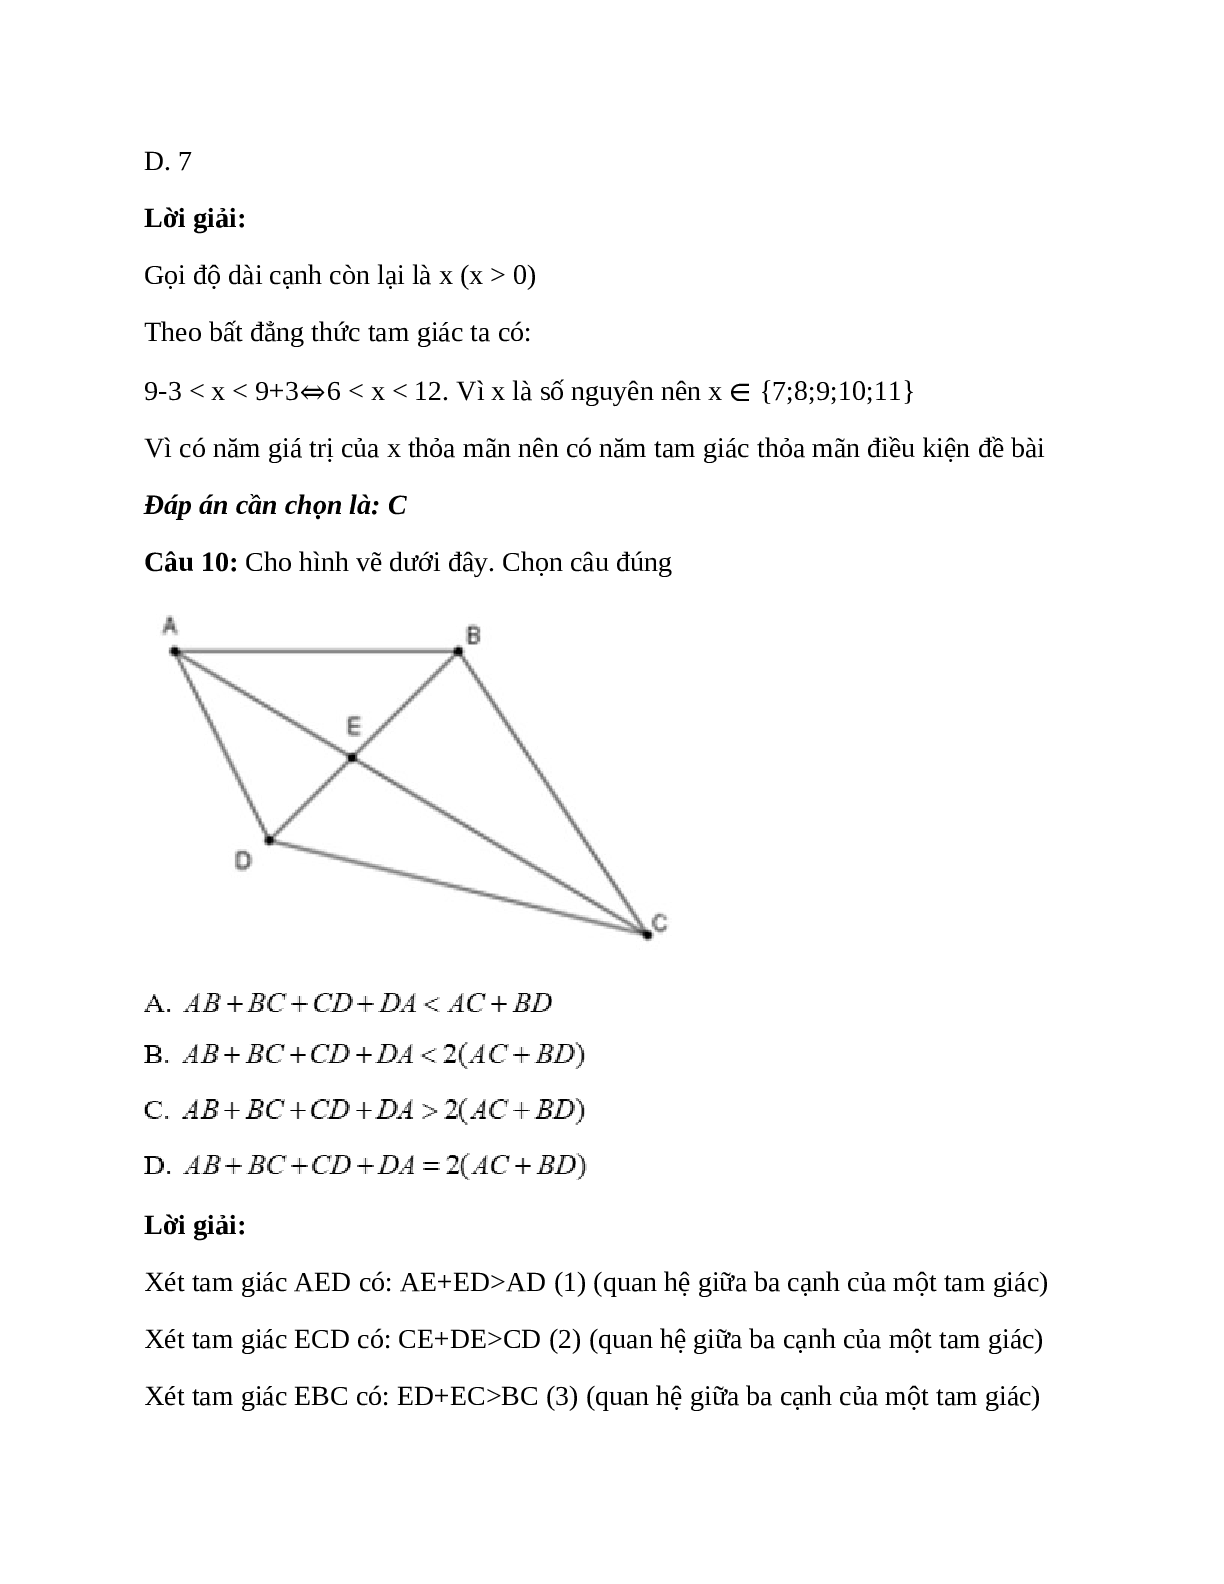 Trắc nghiệm Quan hệ giữa ba cạnh của một tam giác - Bất đẳng thức tam giác có đáp án – Toán lớp 7 (trang 7)